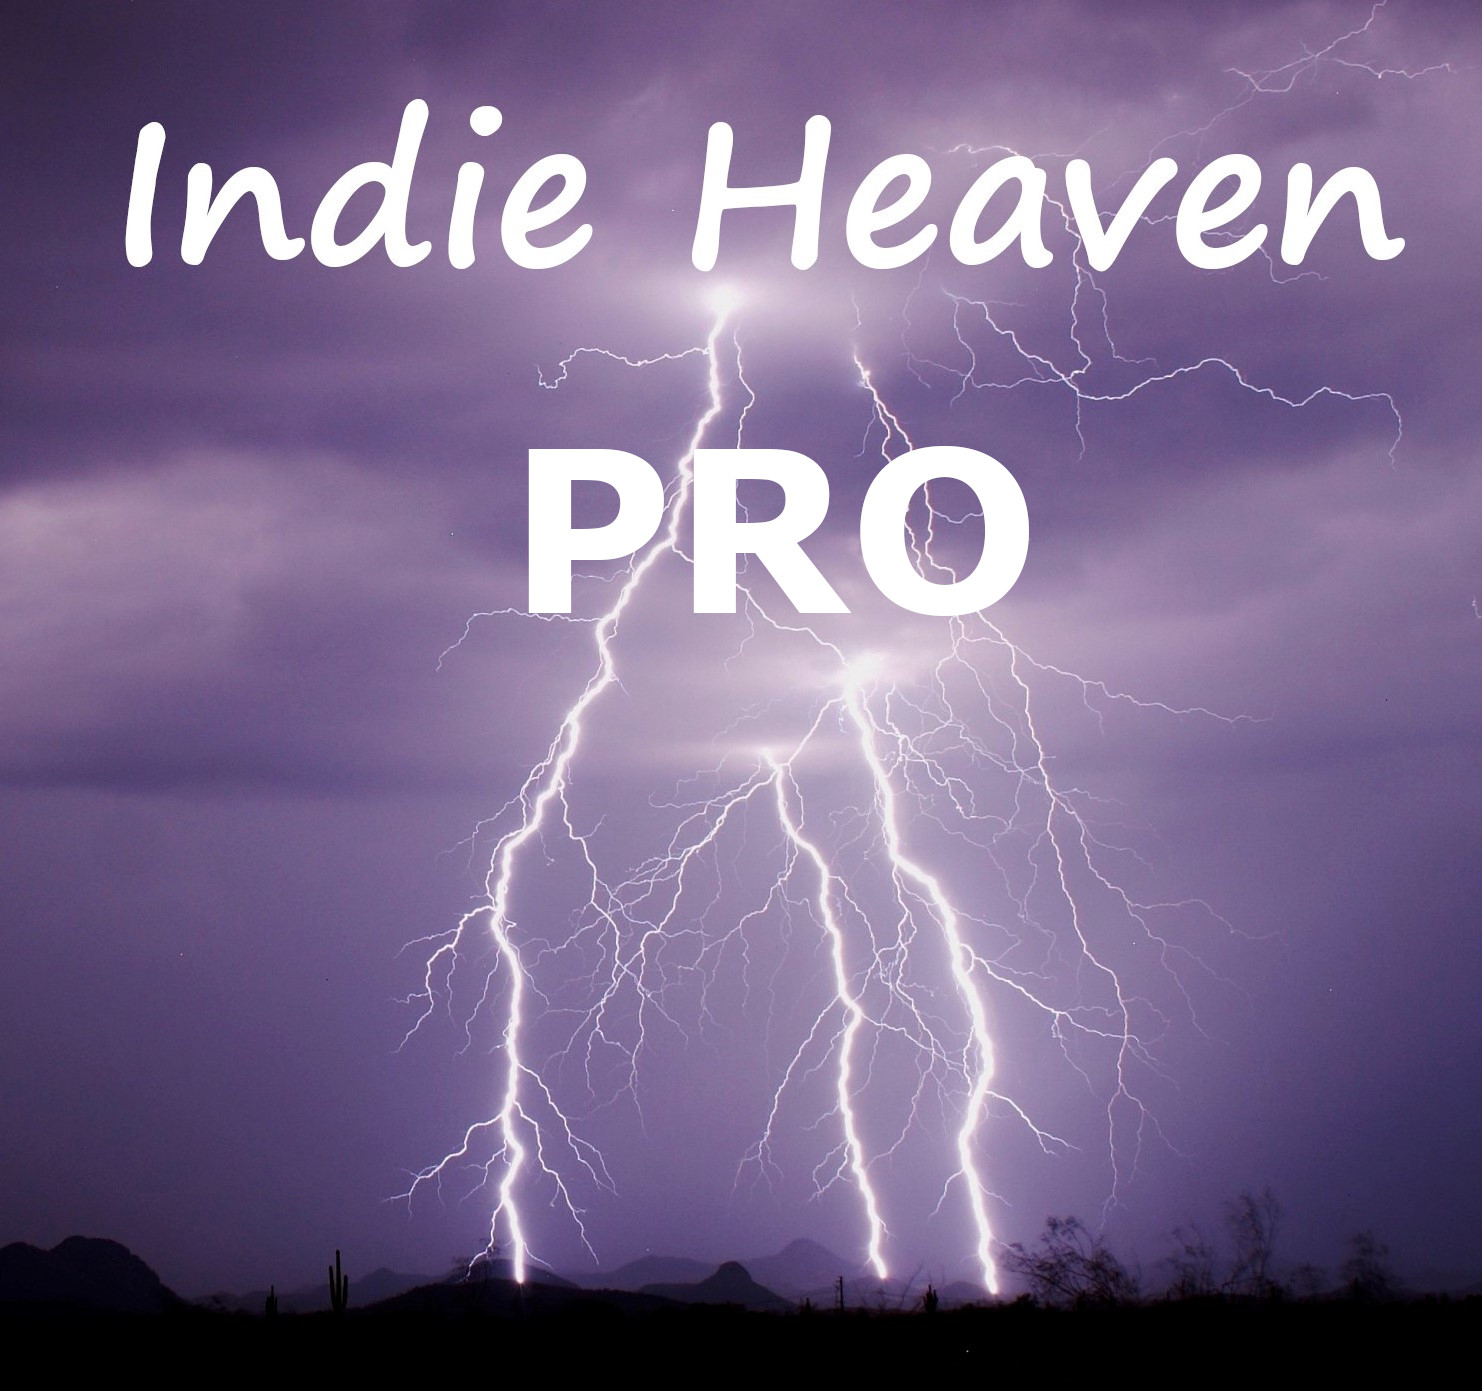 Indie Heaven Pro